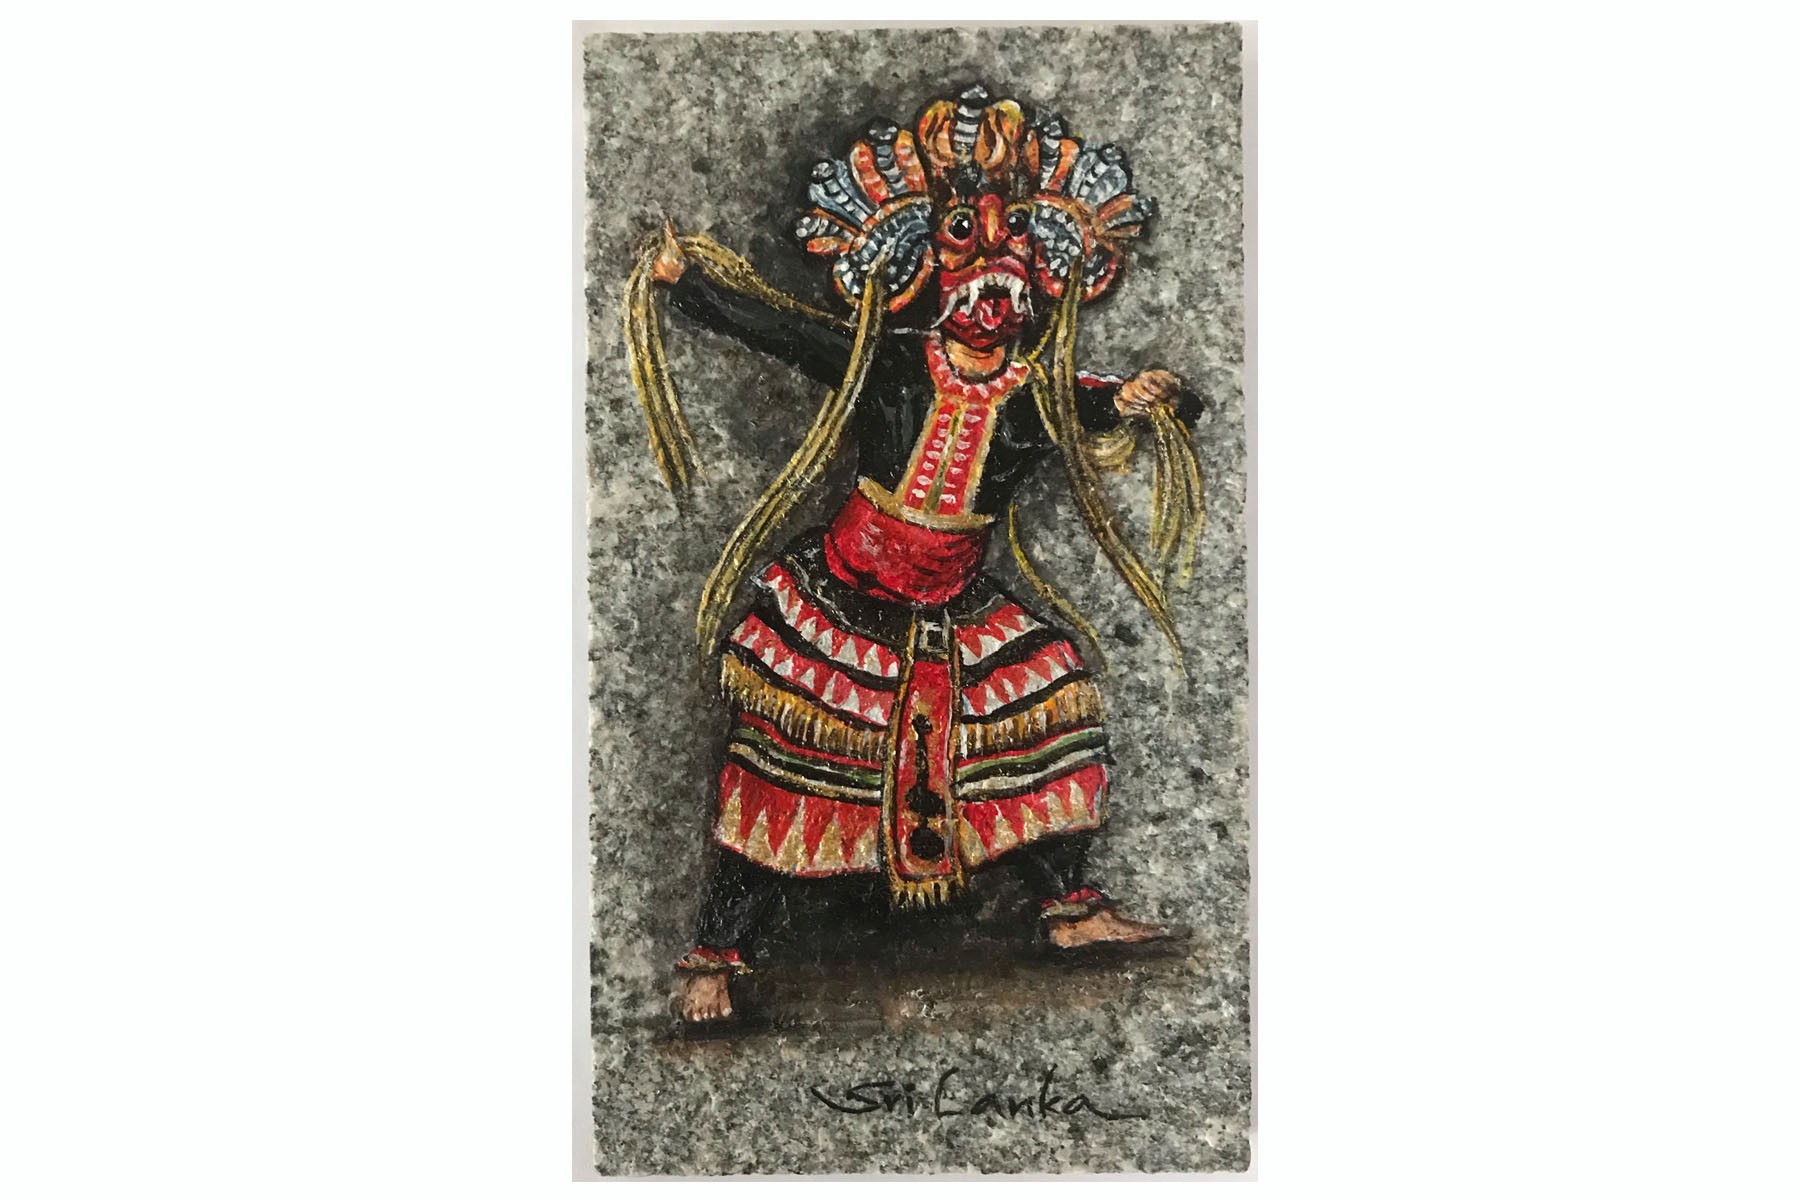 Masked Dancer (Devil) by H Mapalagama